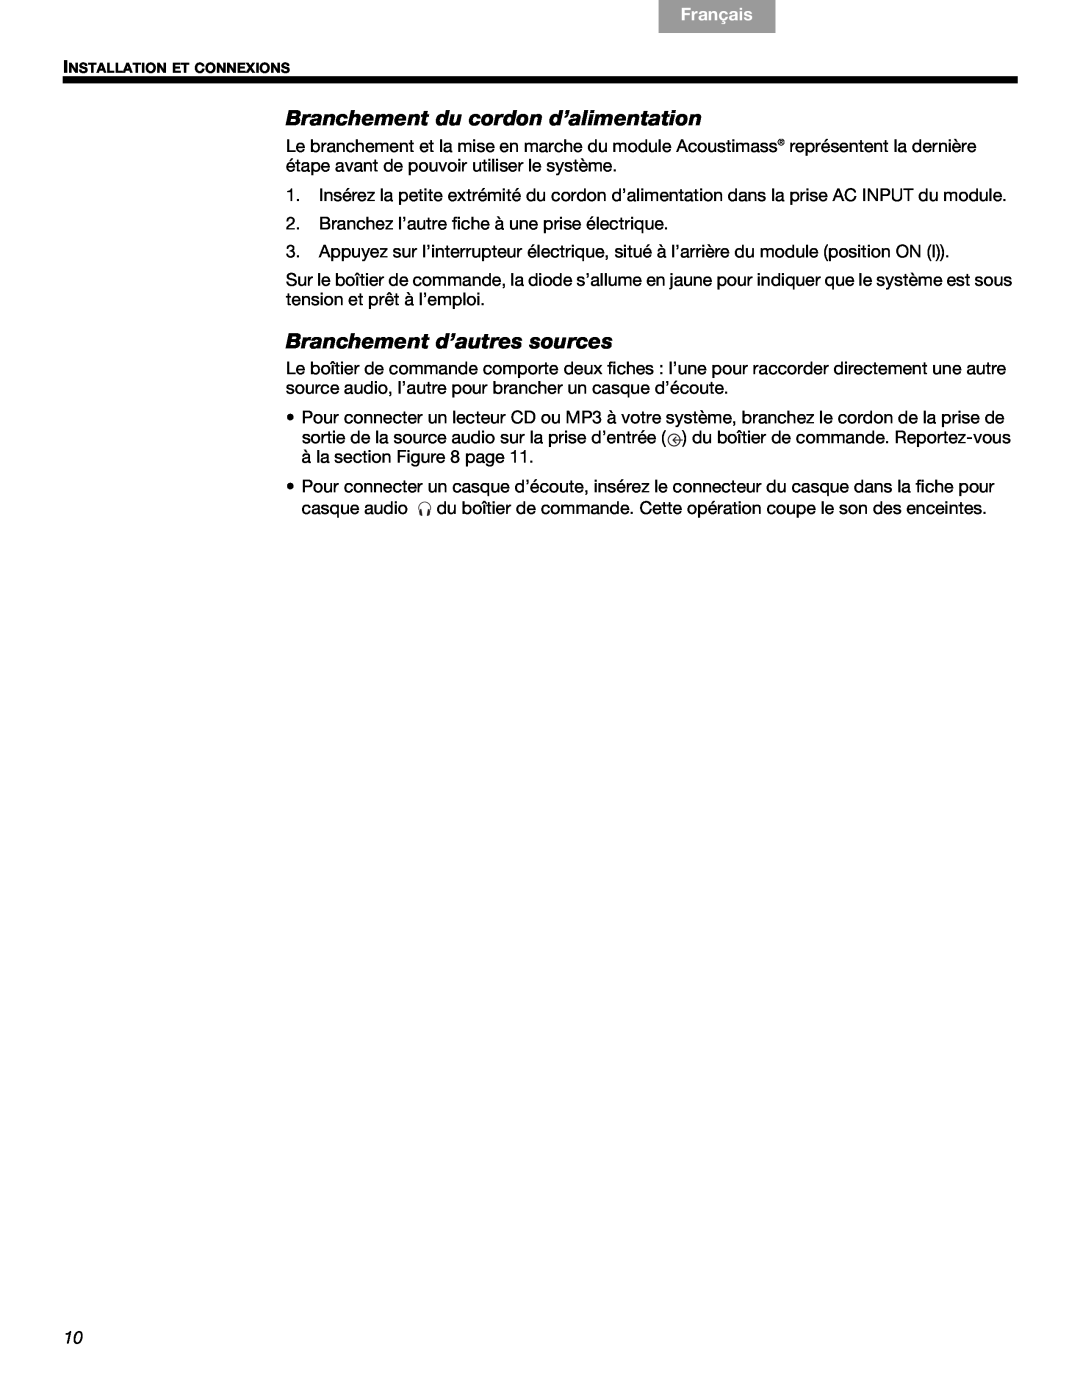 Bose 3 manual Branchement du cordon d’alimentation, Branchement d’autres sources, Français, Español English 